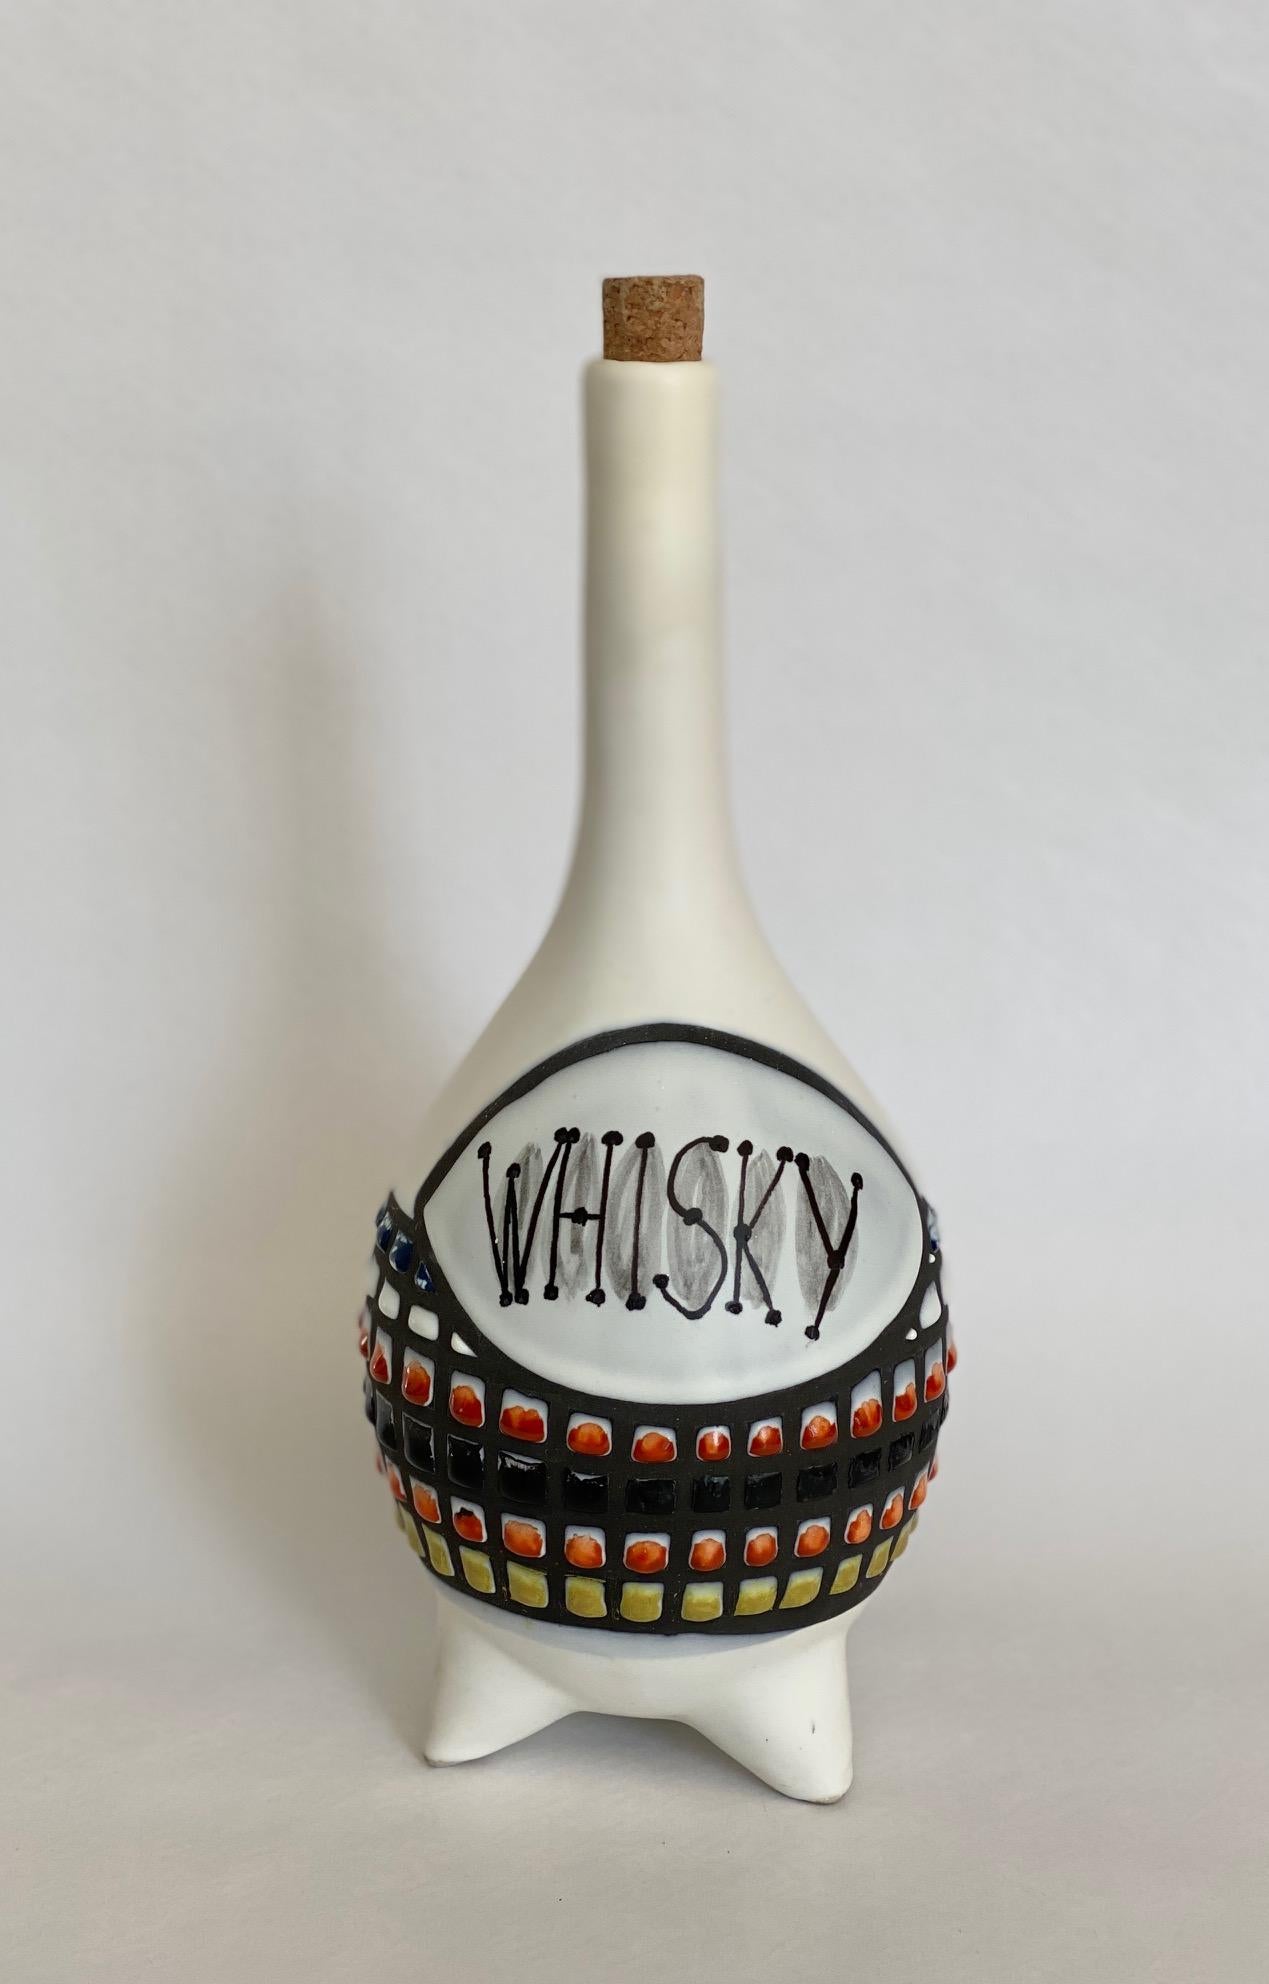 ceramic whisky bottles